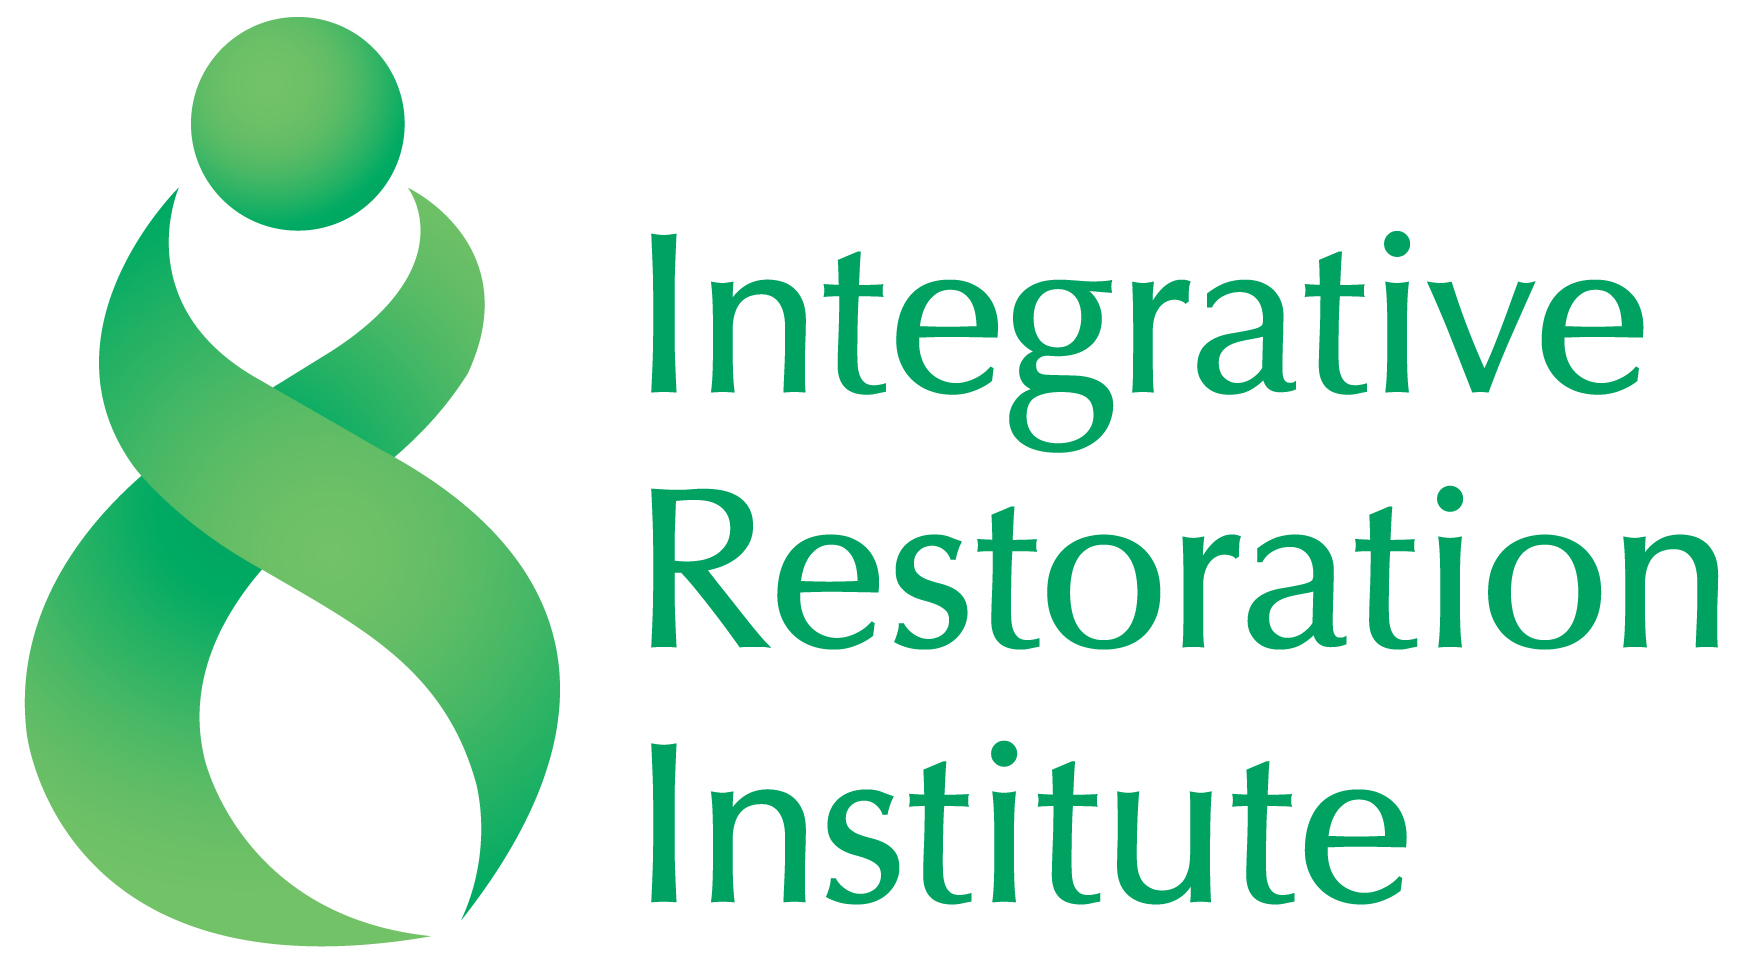 Integrative Restoration Institute